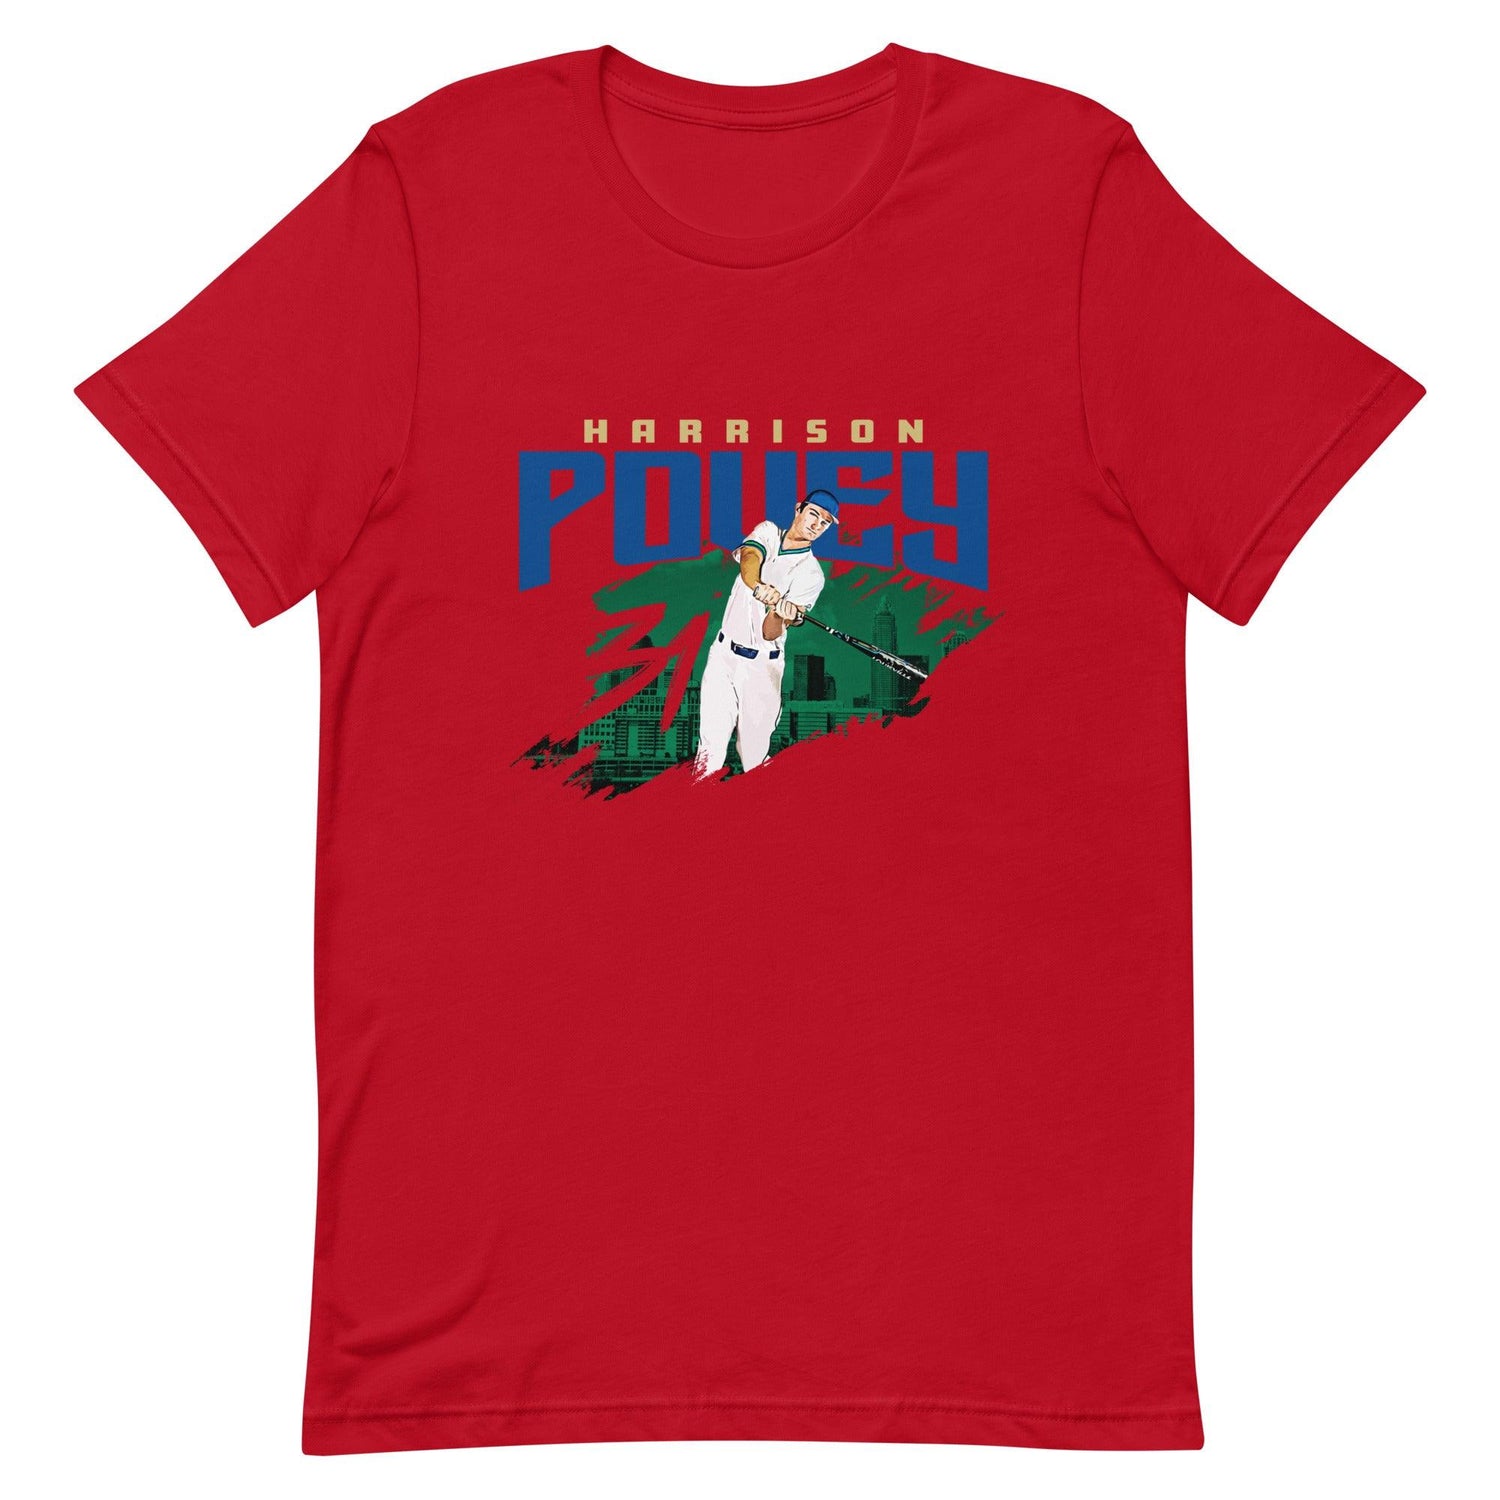 Harrison Povey "Gameday" t-shirt - Fan Arch